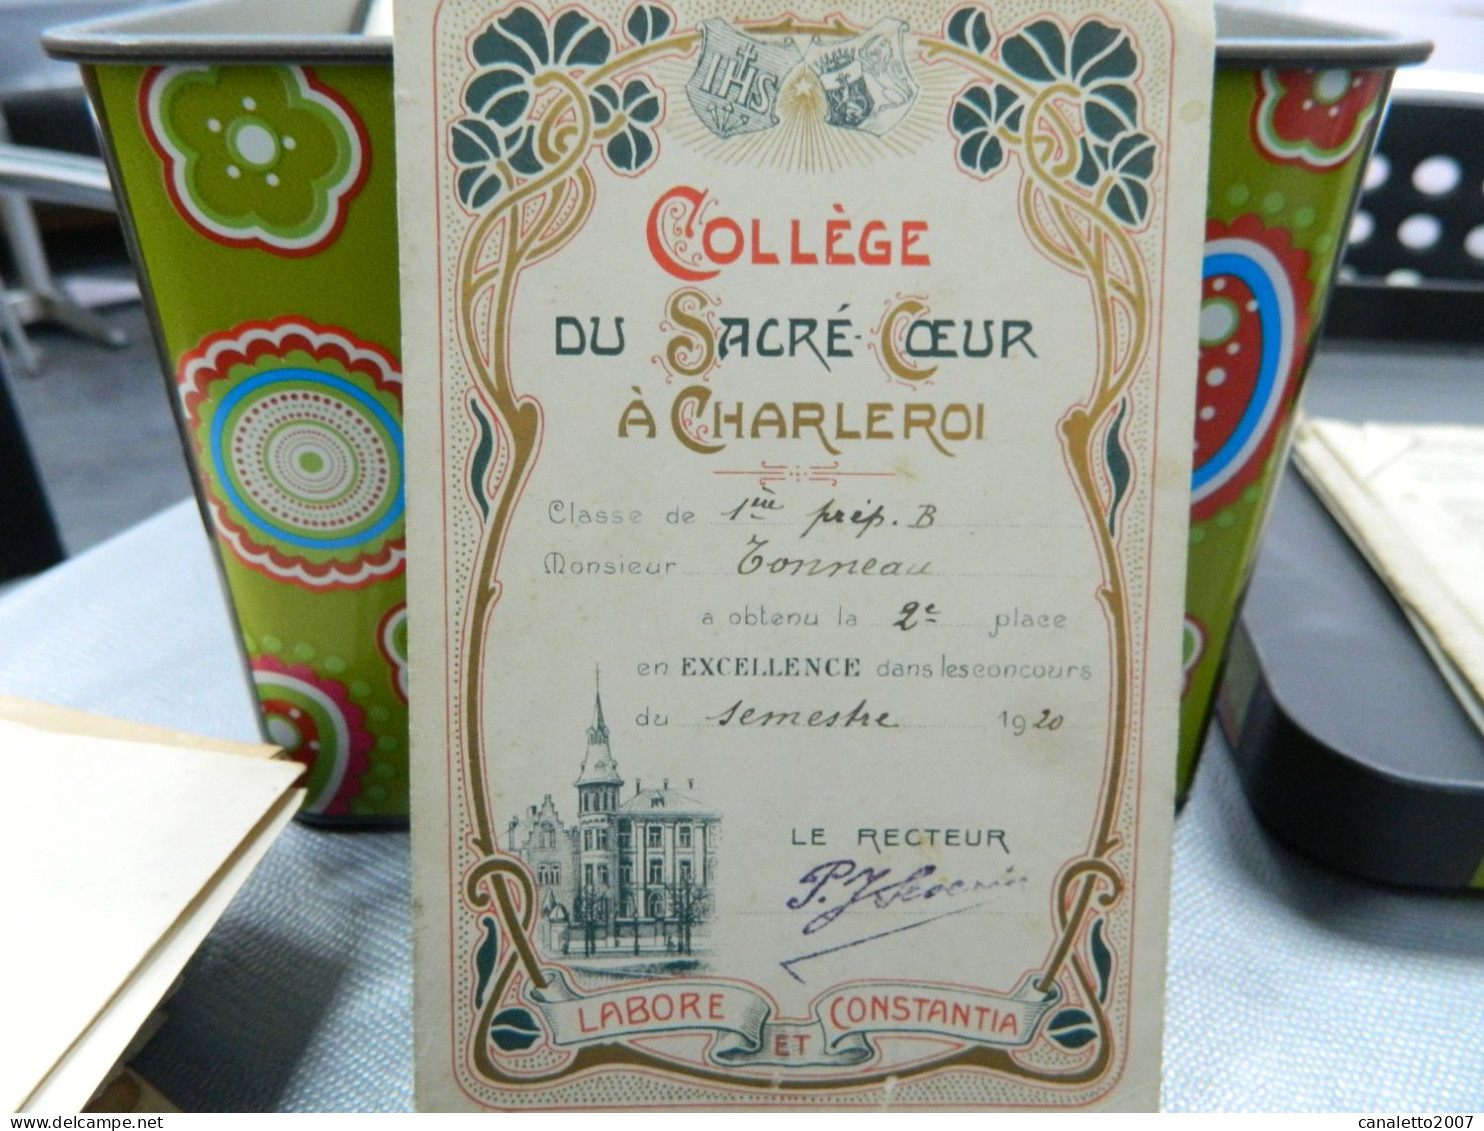 CHARLEROI: COLLEGE DU SACRE COEUR A CHARLEROI CARTE D'EXCELLENCE  DE M.TONNEAU EN 1920-DECOR ART NOUVEAU - Diploma & School Reports